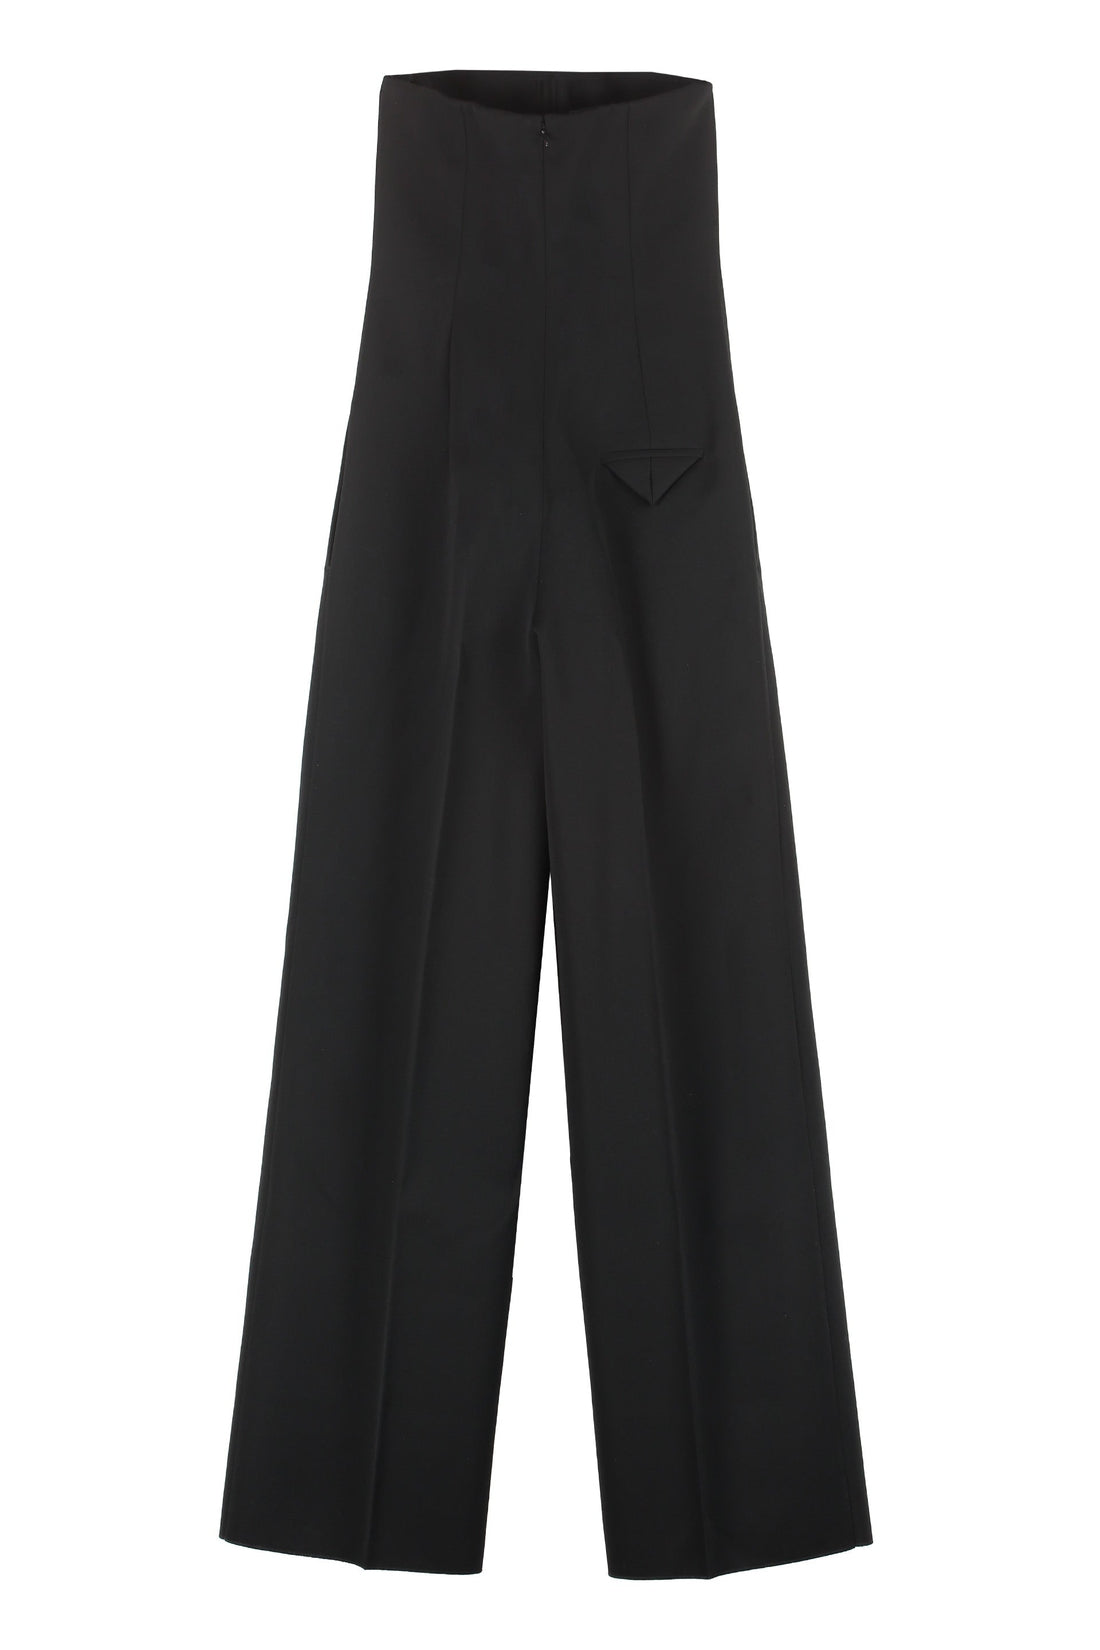 Bottega Veneta-OUTLET-SALE-Wide-leg pants jumpsuit-ARCHIVIST